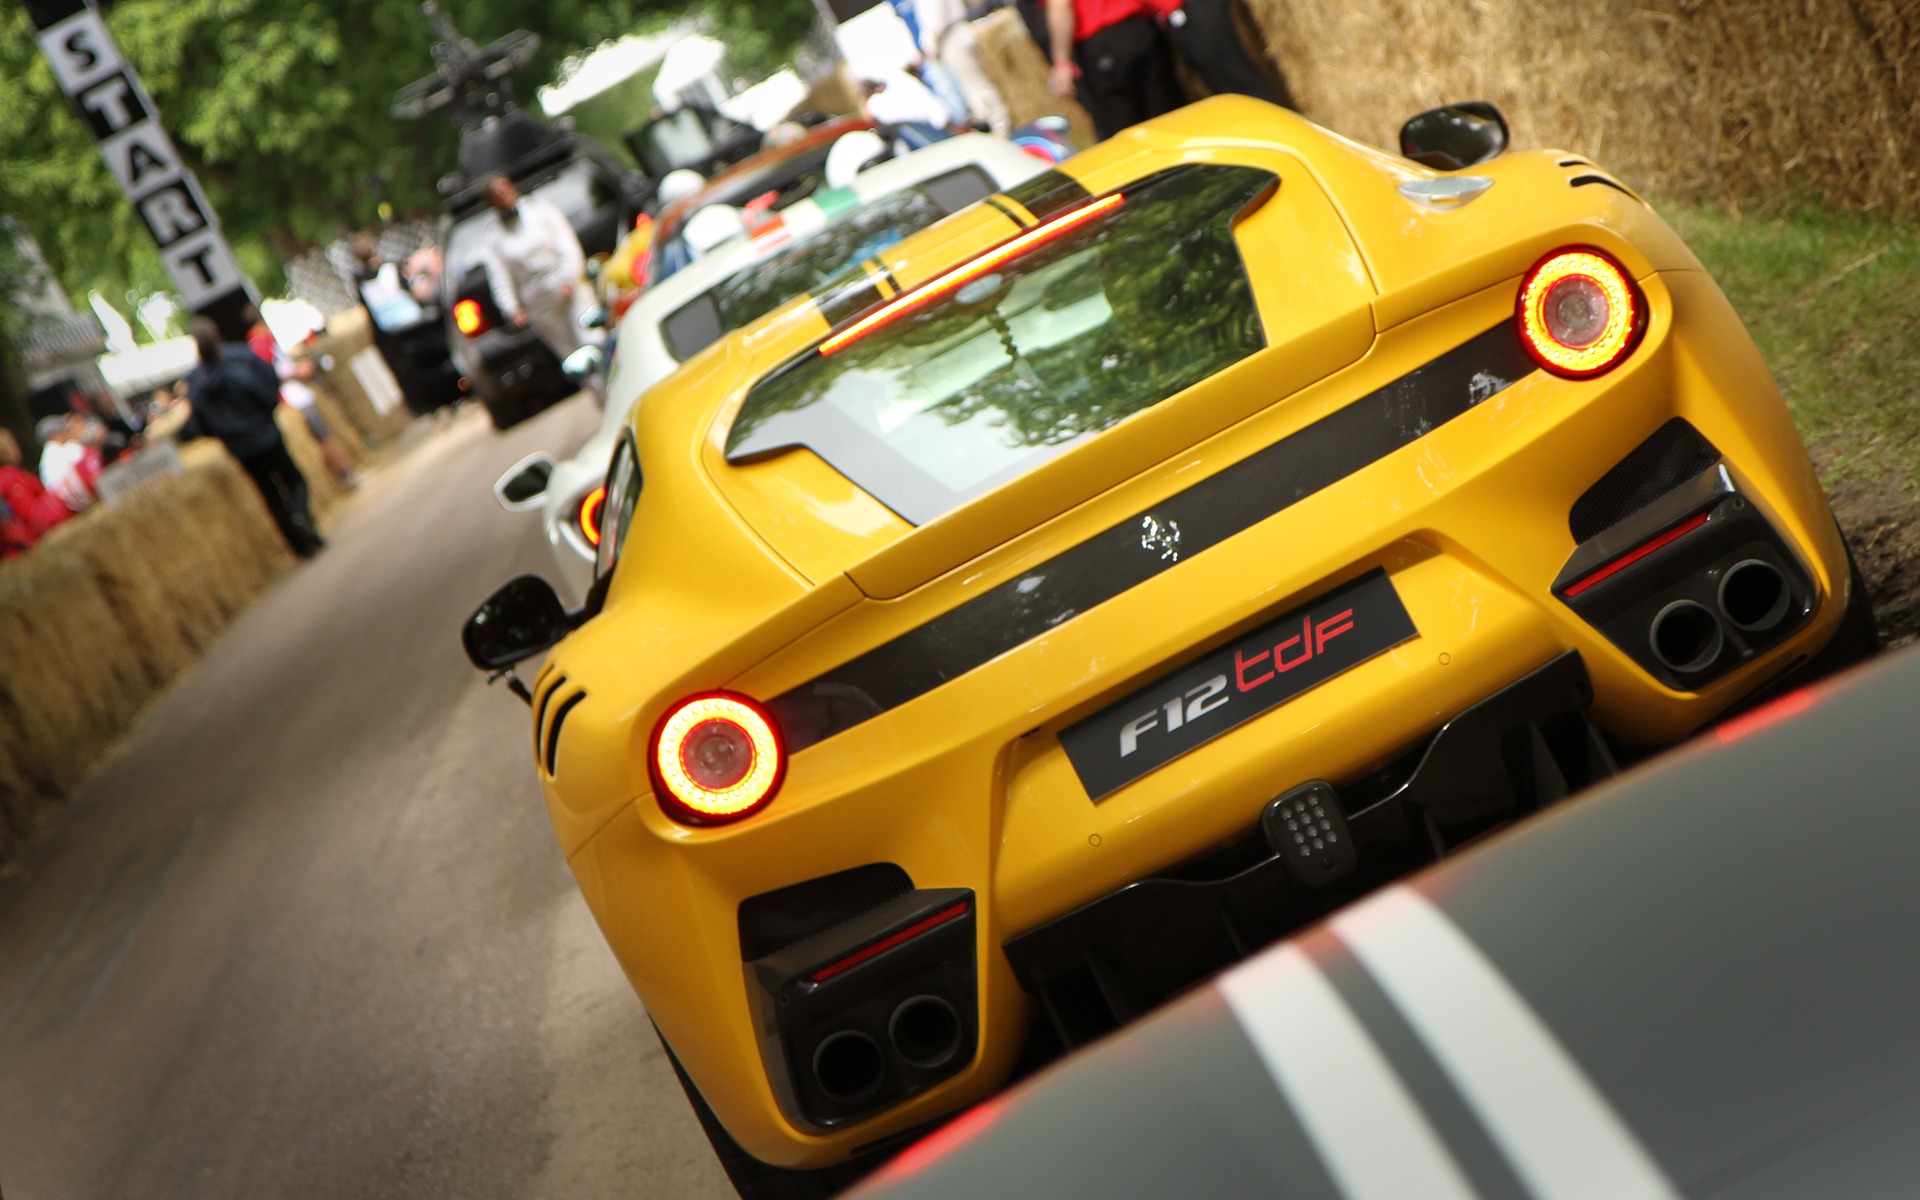 Ferrari F12 tdf au Festival of Speed